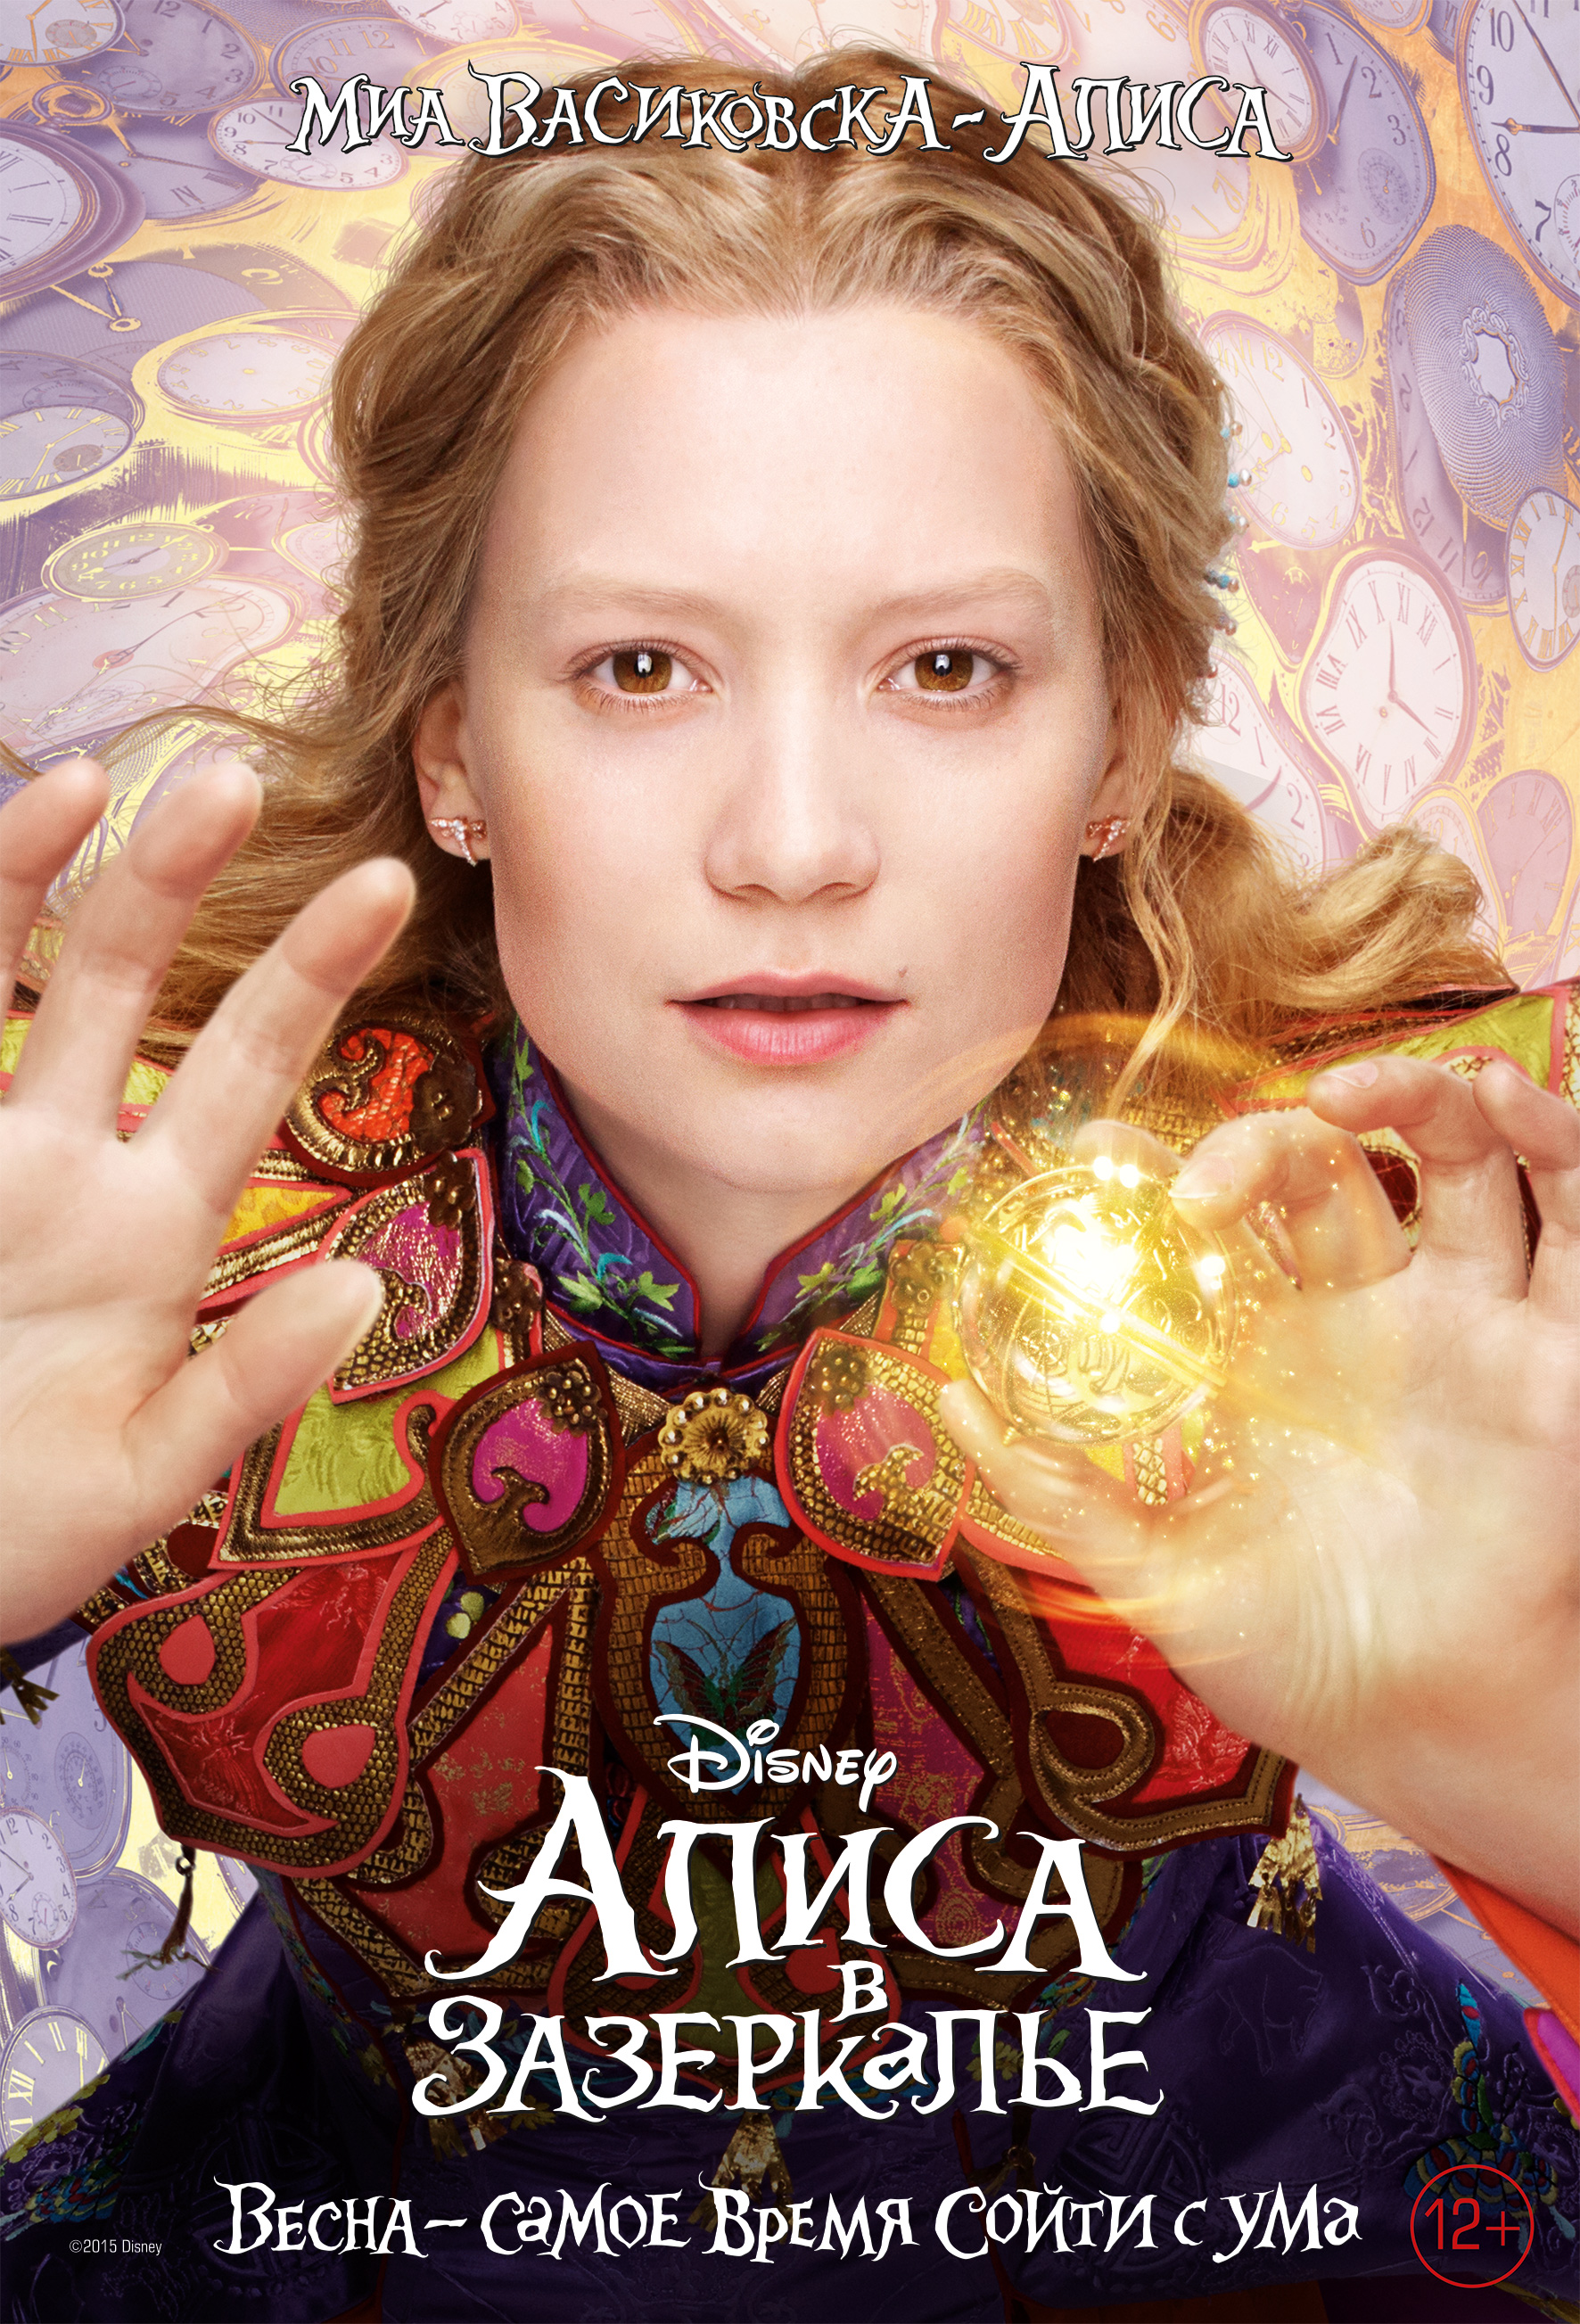 Появились русскоязычные постеры к блокбастеру "Алиса в Зазеркалье"